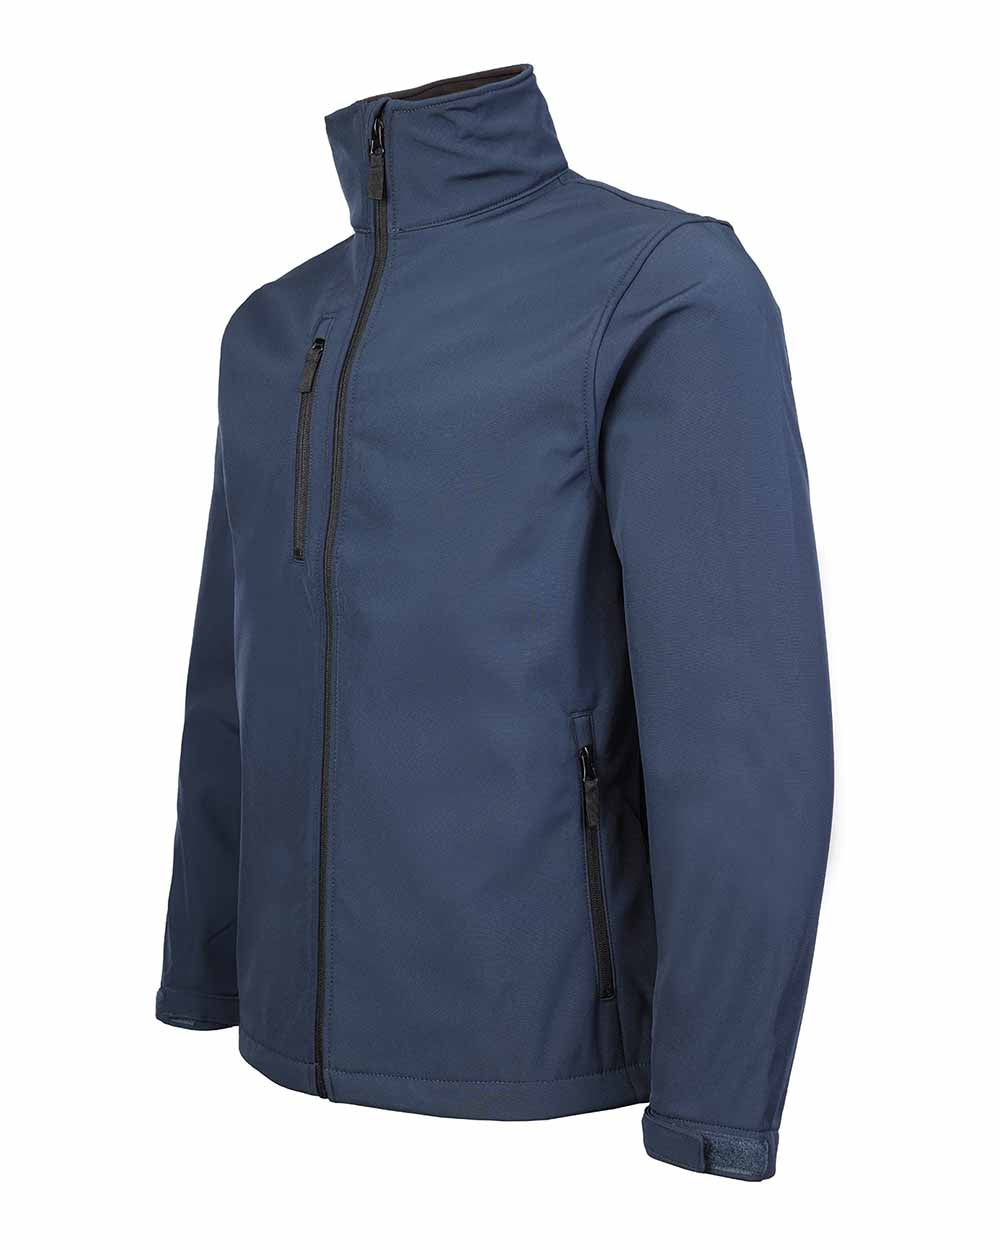 Zipped phone pocket Fort Selkirk Softshell Waterproof Jacket in Navy Blue  